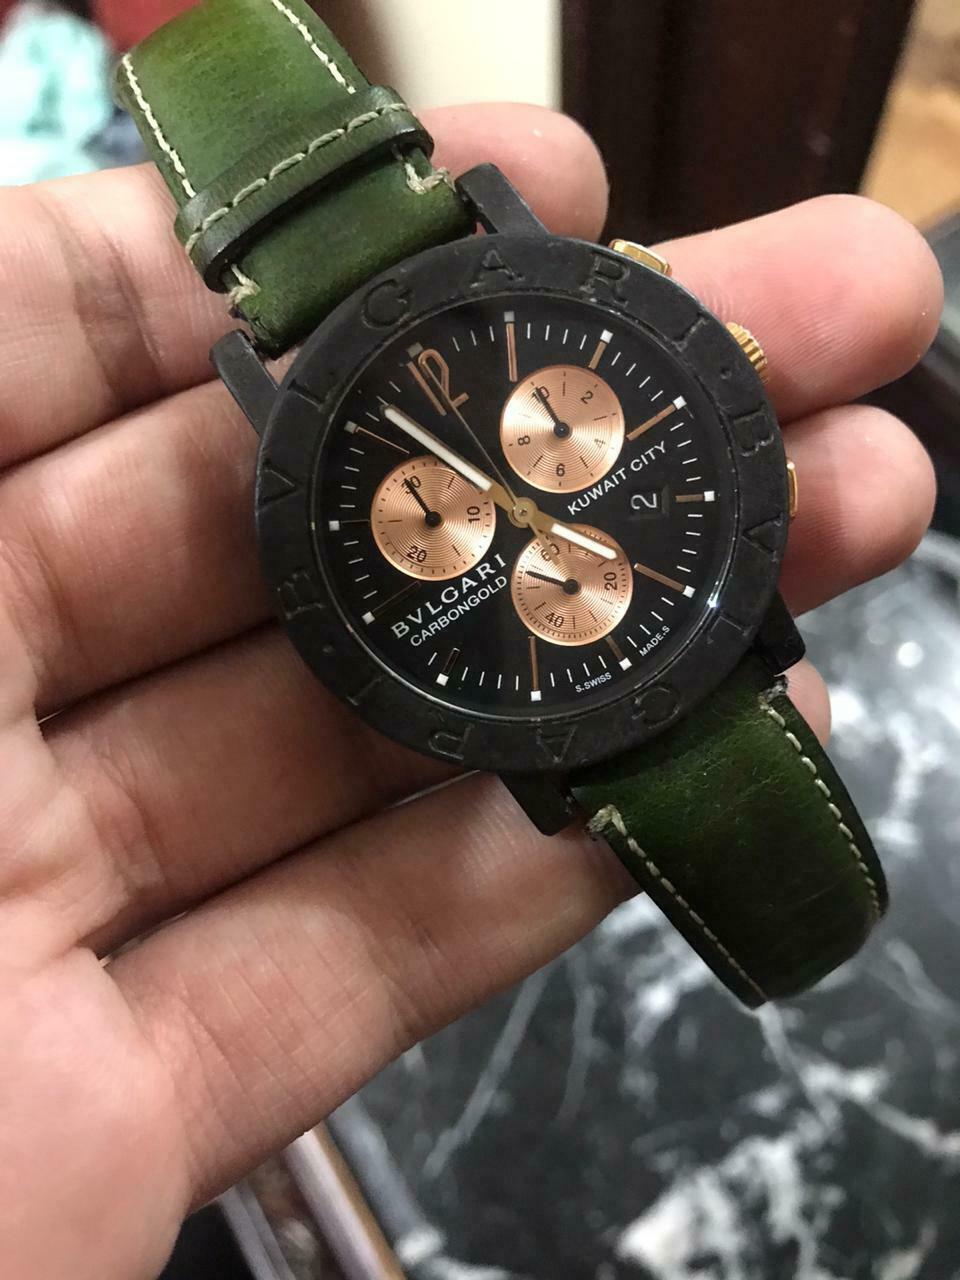 Kuwait chronograph wrist watch 